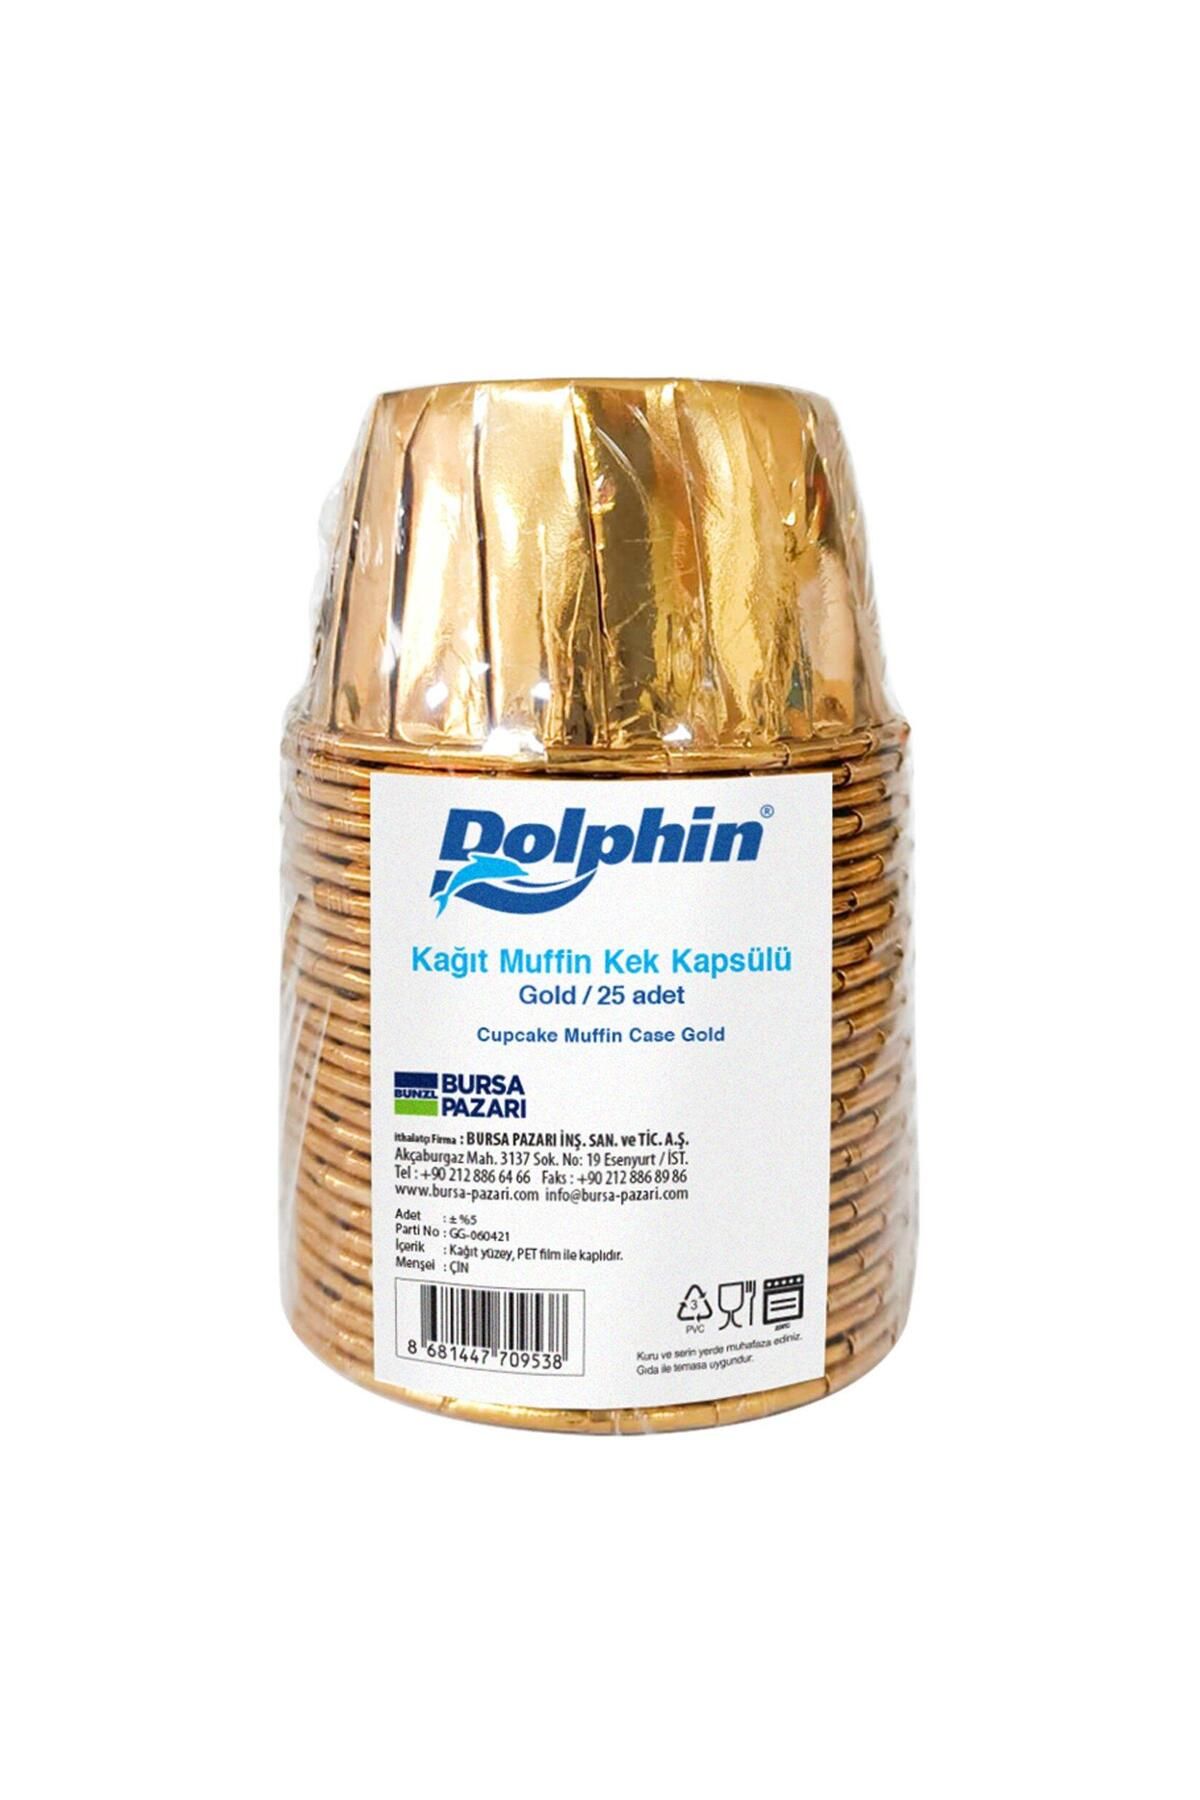 Dolphin Muffin Kağıt Karton Altın Cupcake Kek Kalıbı Kapsülü Kabı - 25 Adetlik 1 Paket